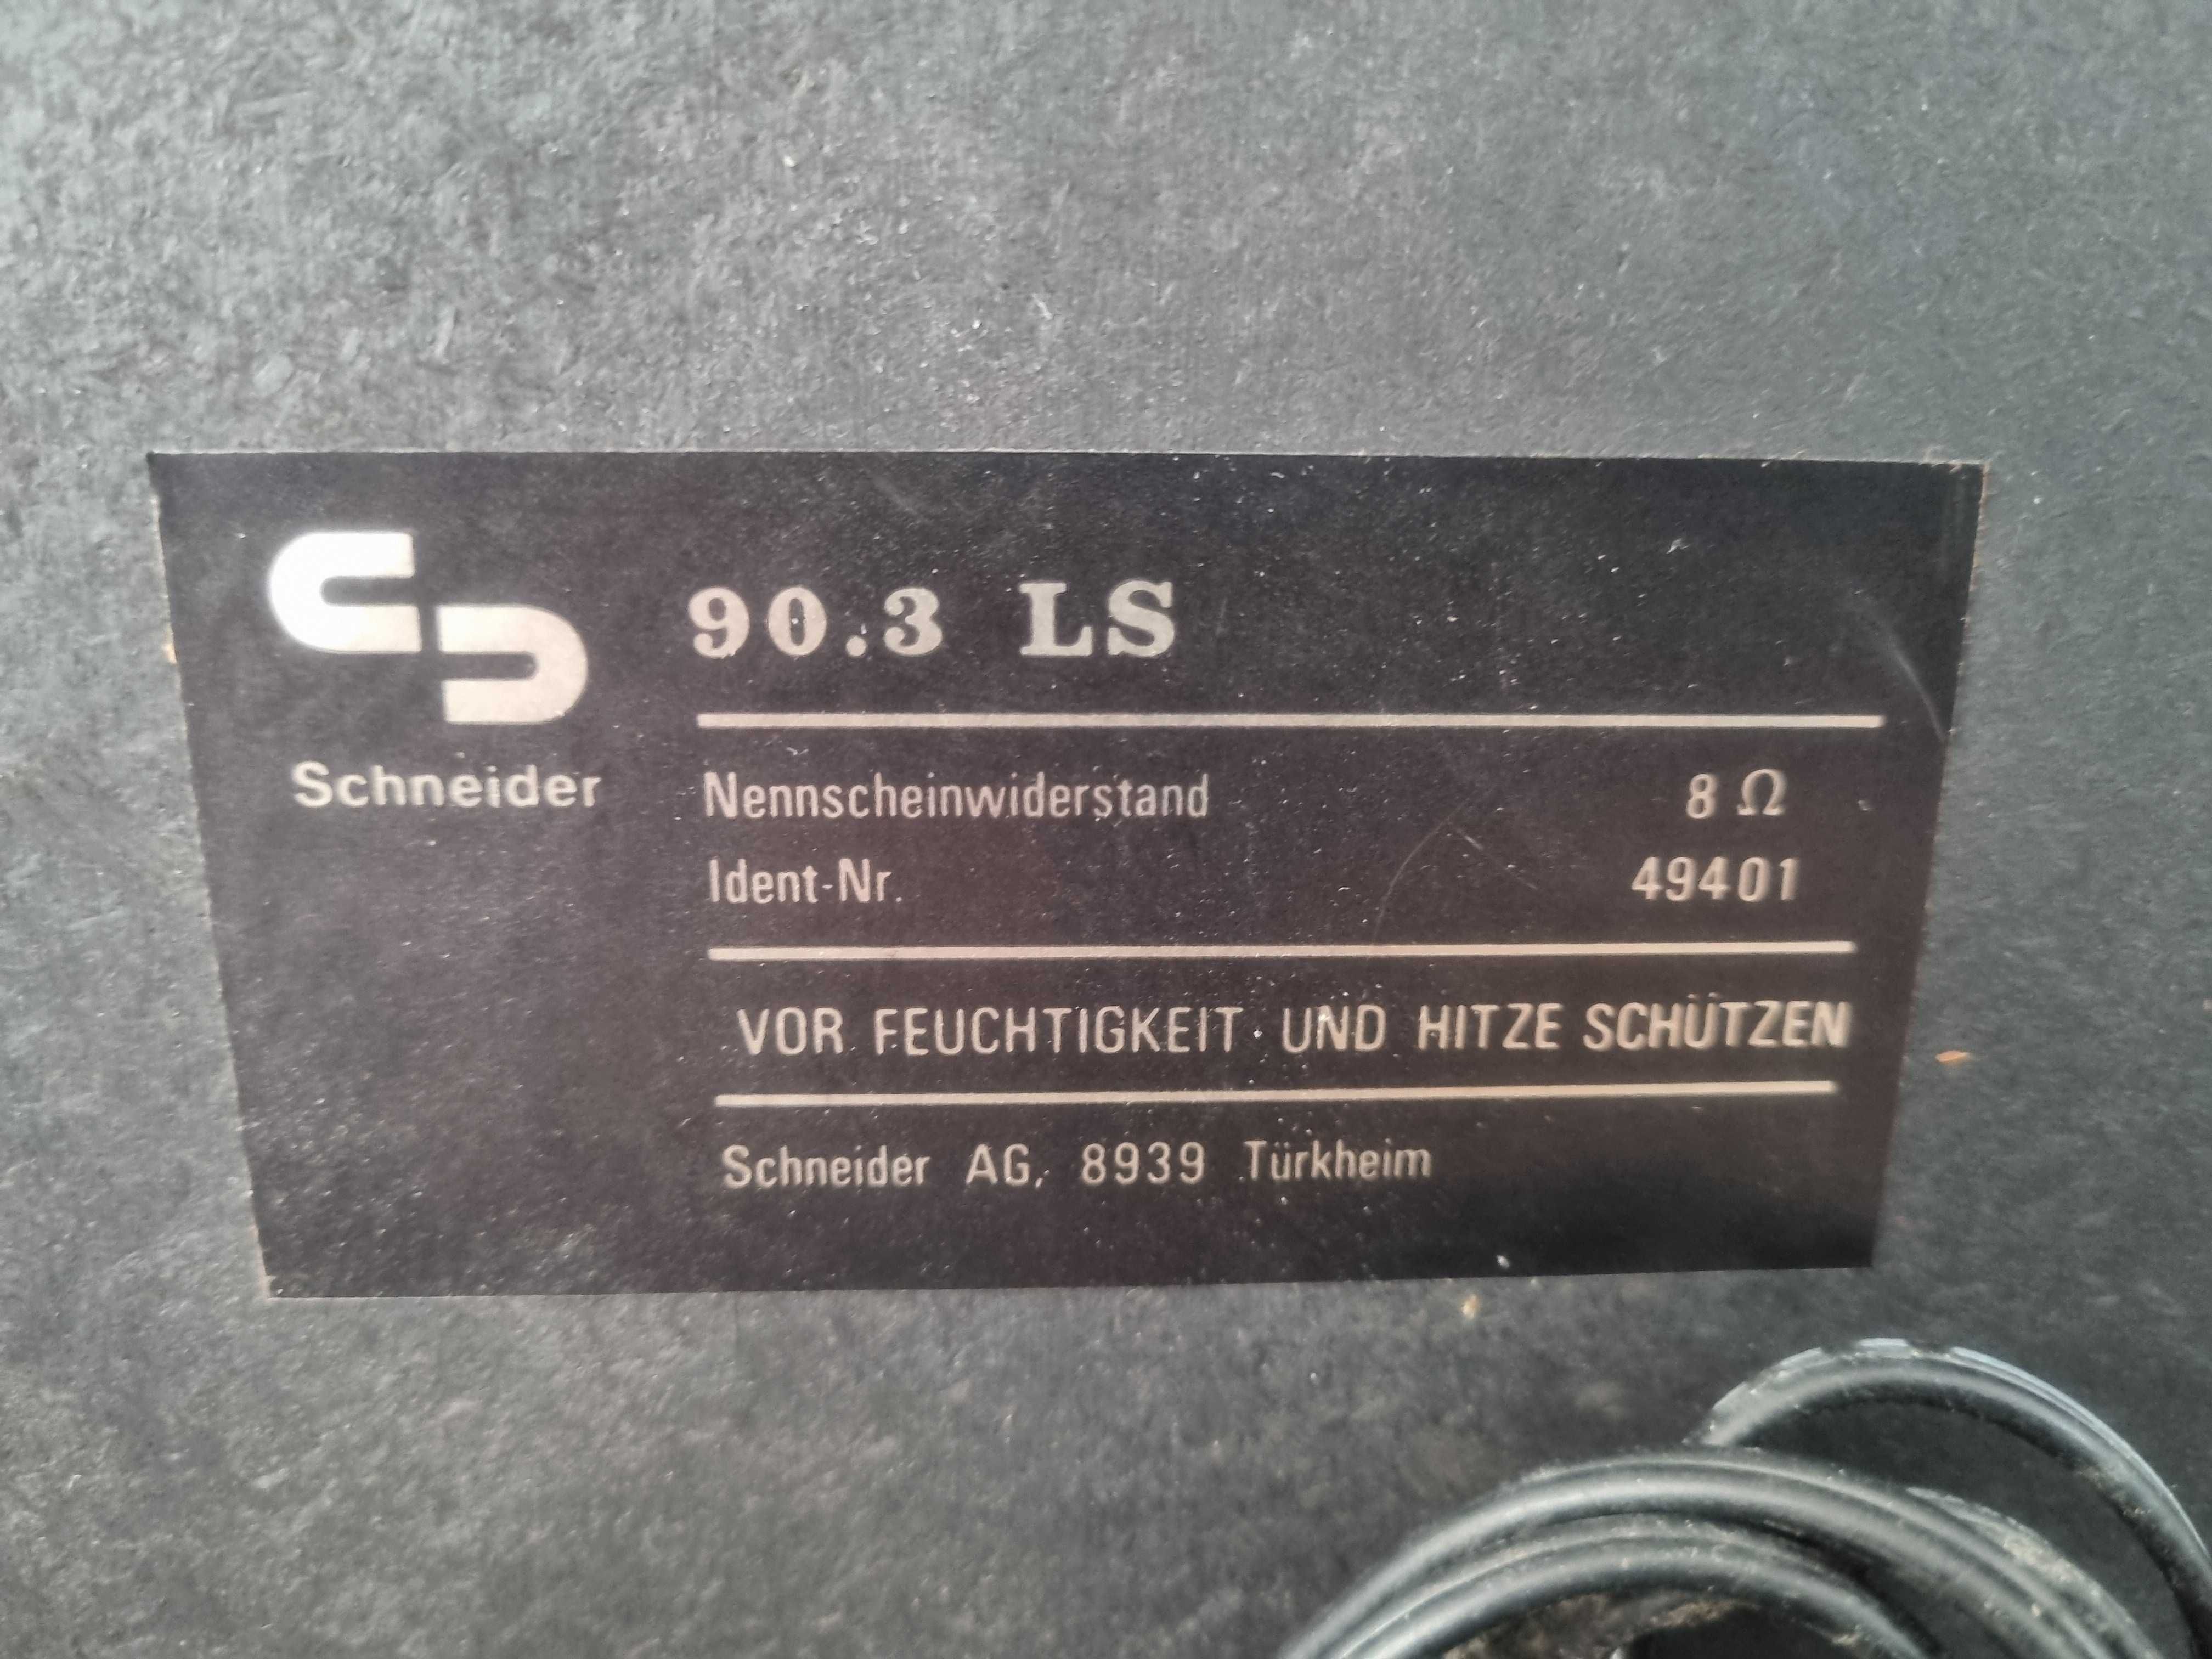 OKAZJA Glosniki kolumny podstawkowe monitory Schneider ls 90.3